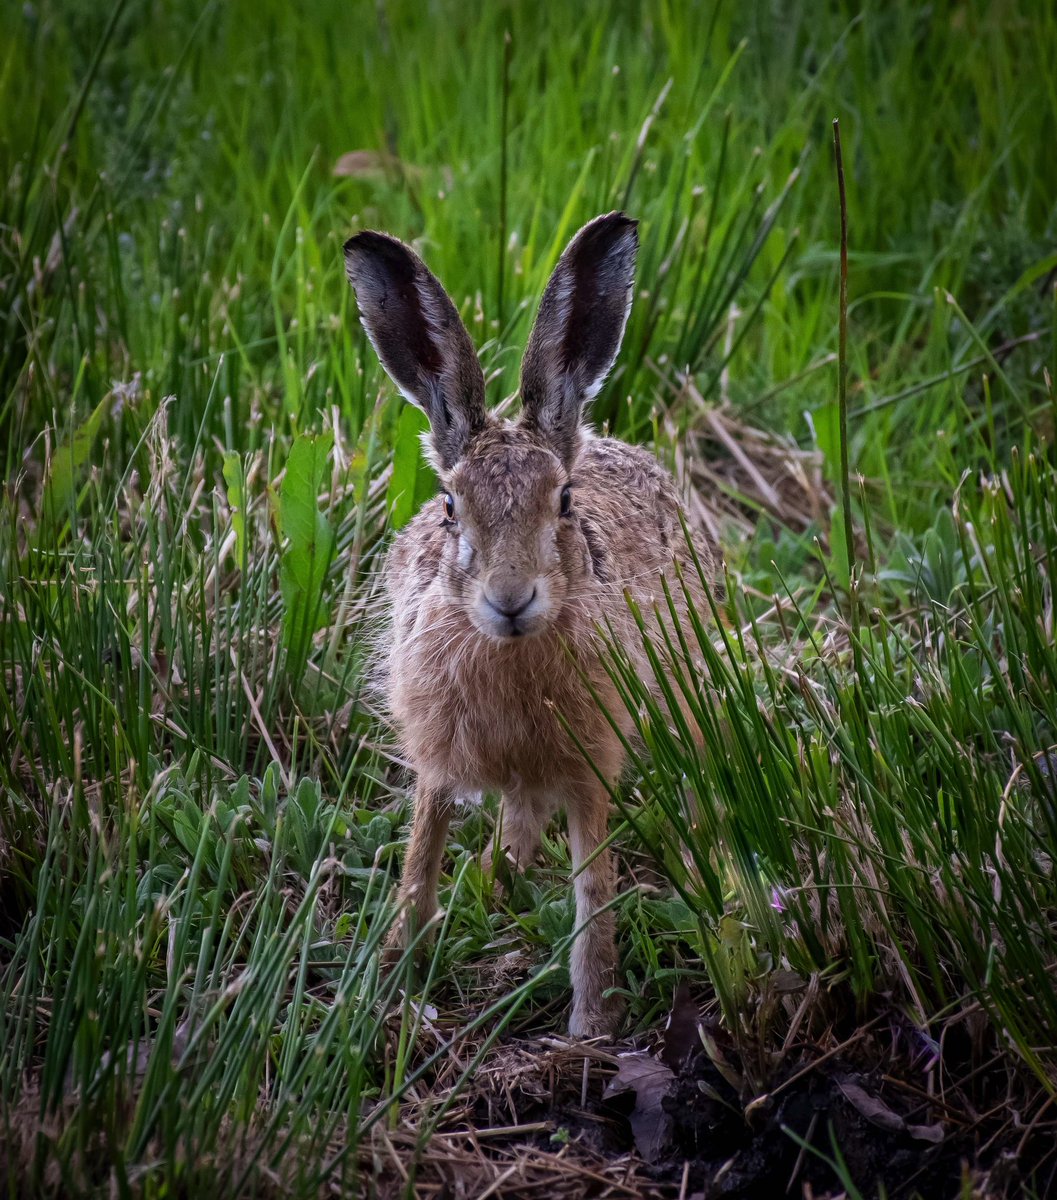 The journey of the Hare #wildlife #hare #nature @WildlifeMag @BBCSpringwatch @WildlifeTrusts @WildlifeInTheUK @devereofficial #wokefieldestate #socute